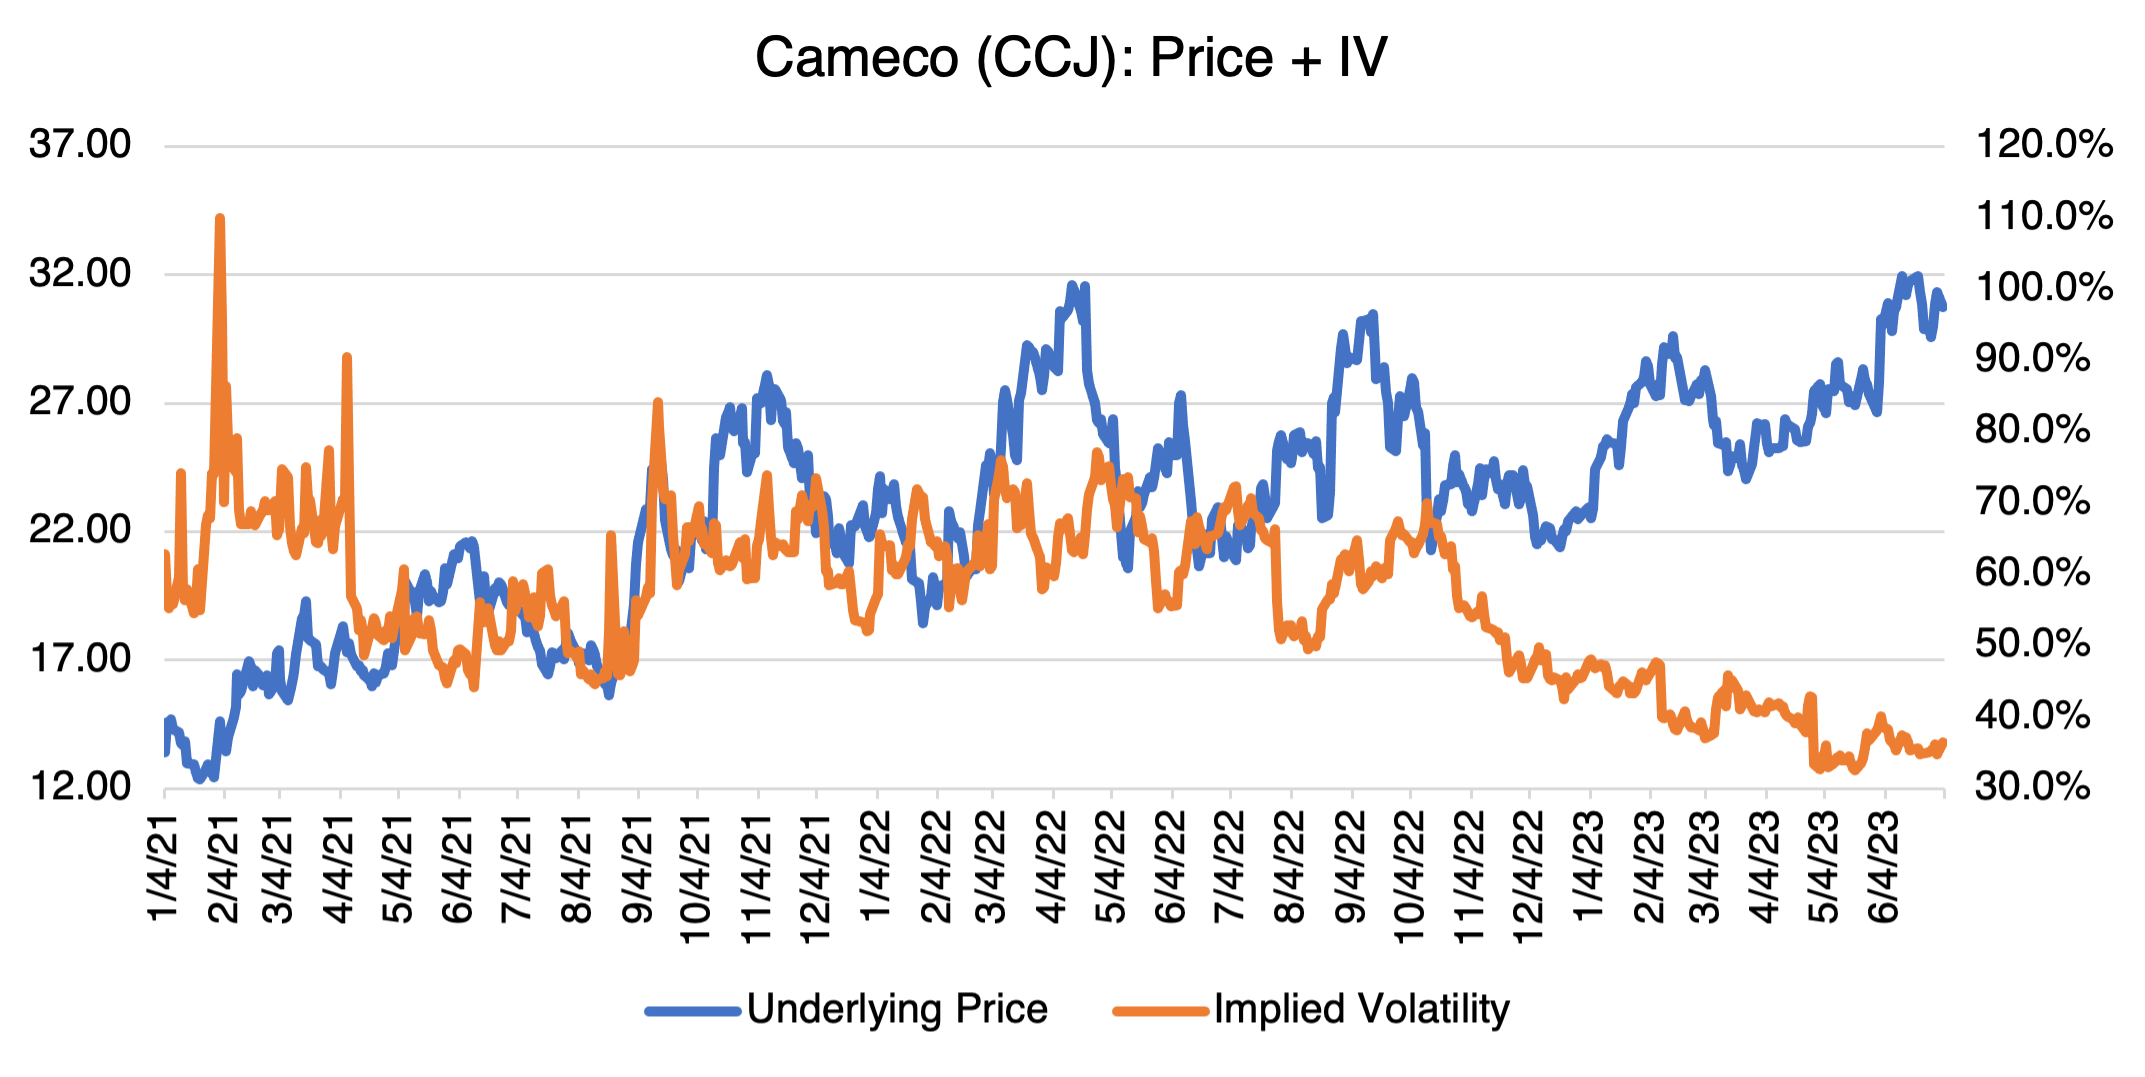 Cameco (CCJ): Price + IV